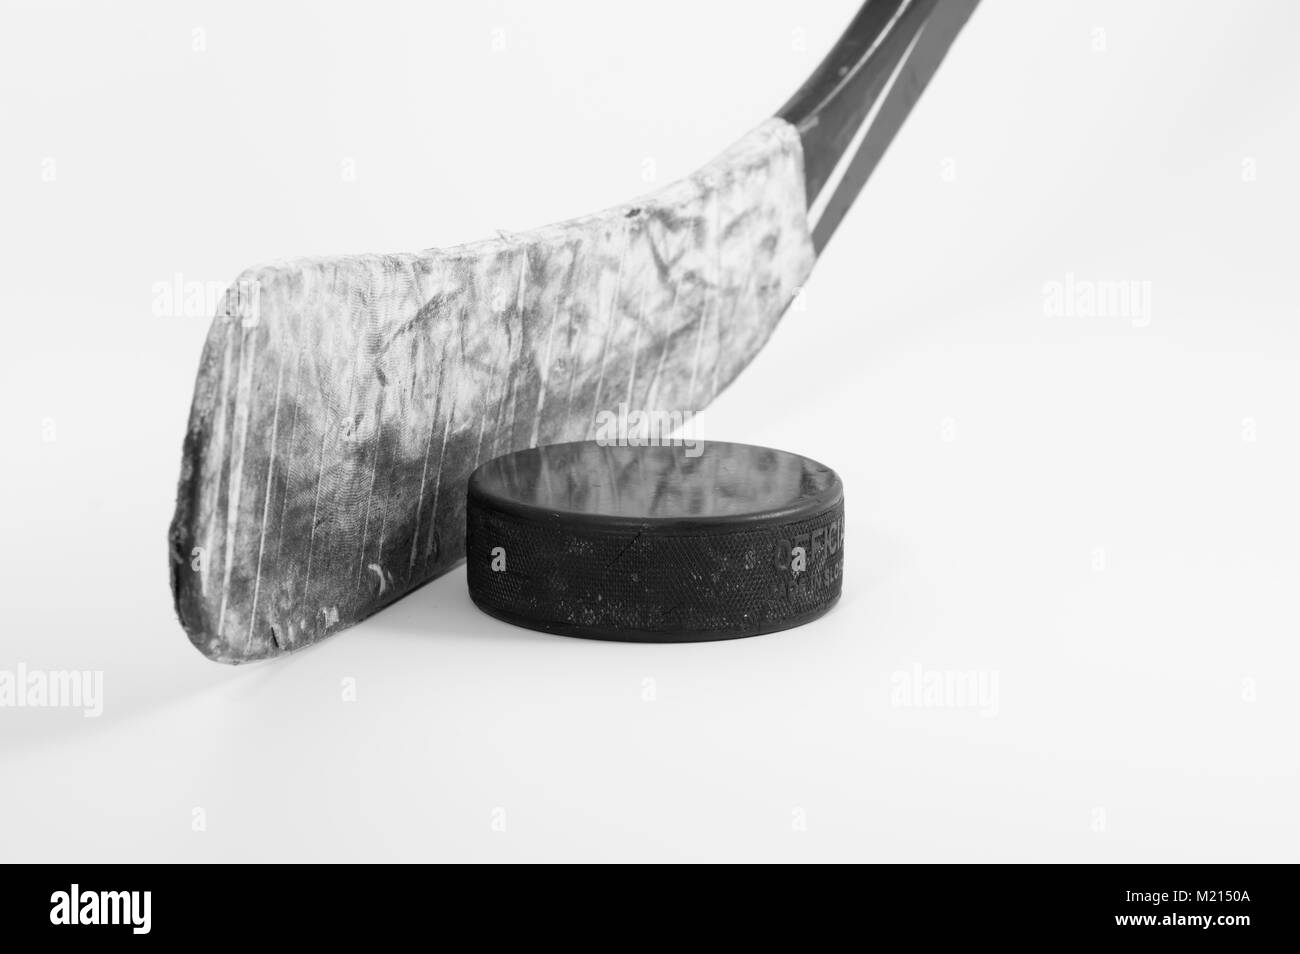 Hockey su ghiaccio stick blade avvolto in rigata nastro bianco e un usato puck su sfondo bianco; immagine monocromatica Foto Stock